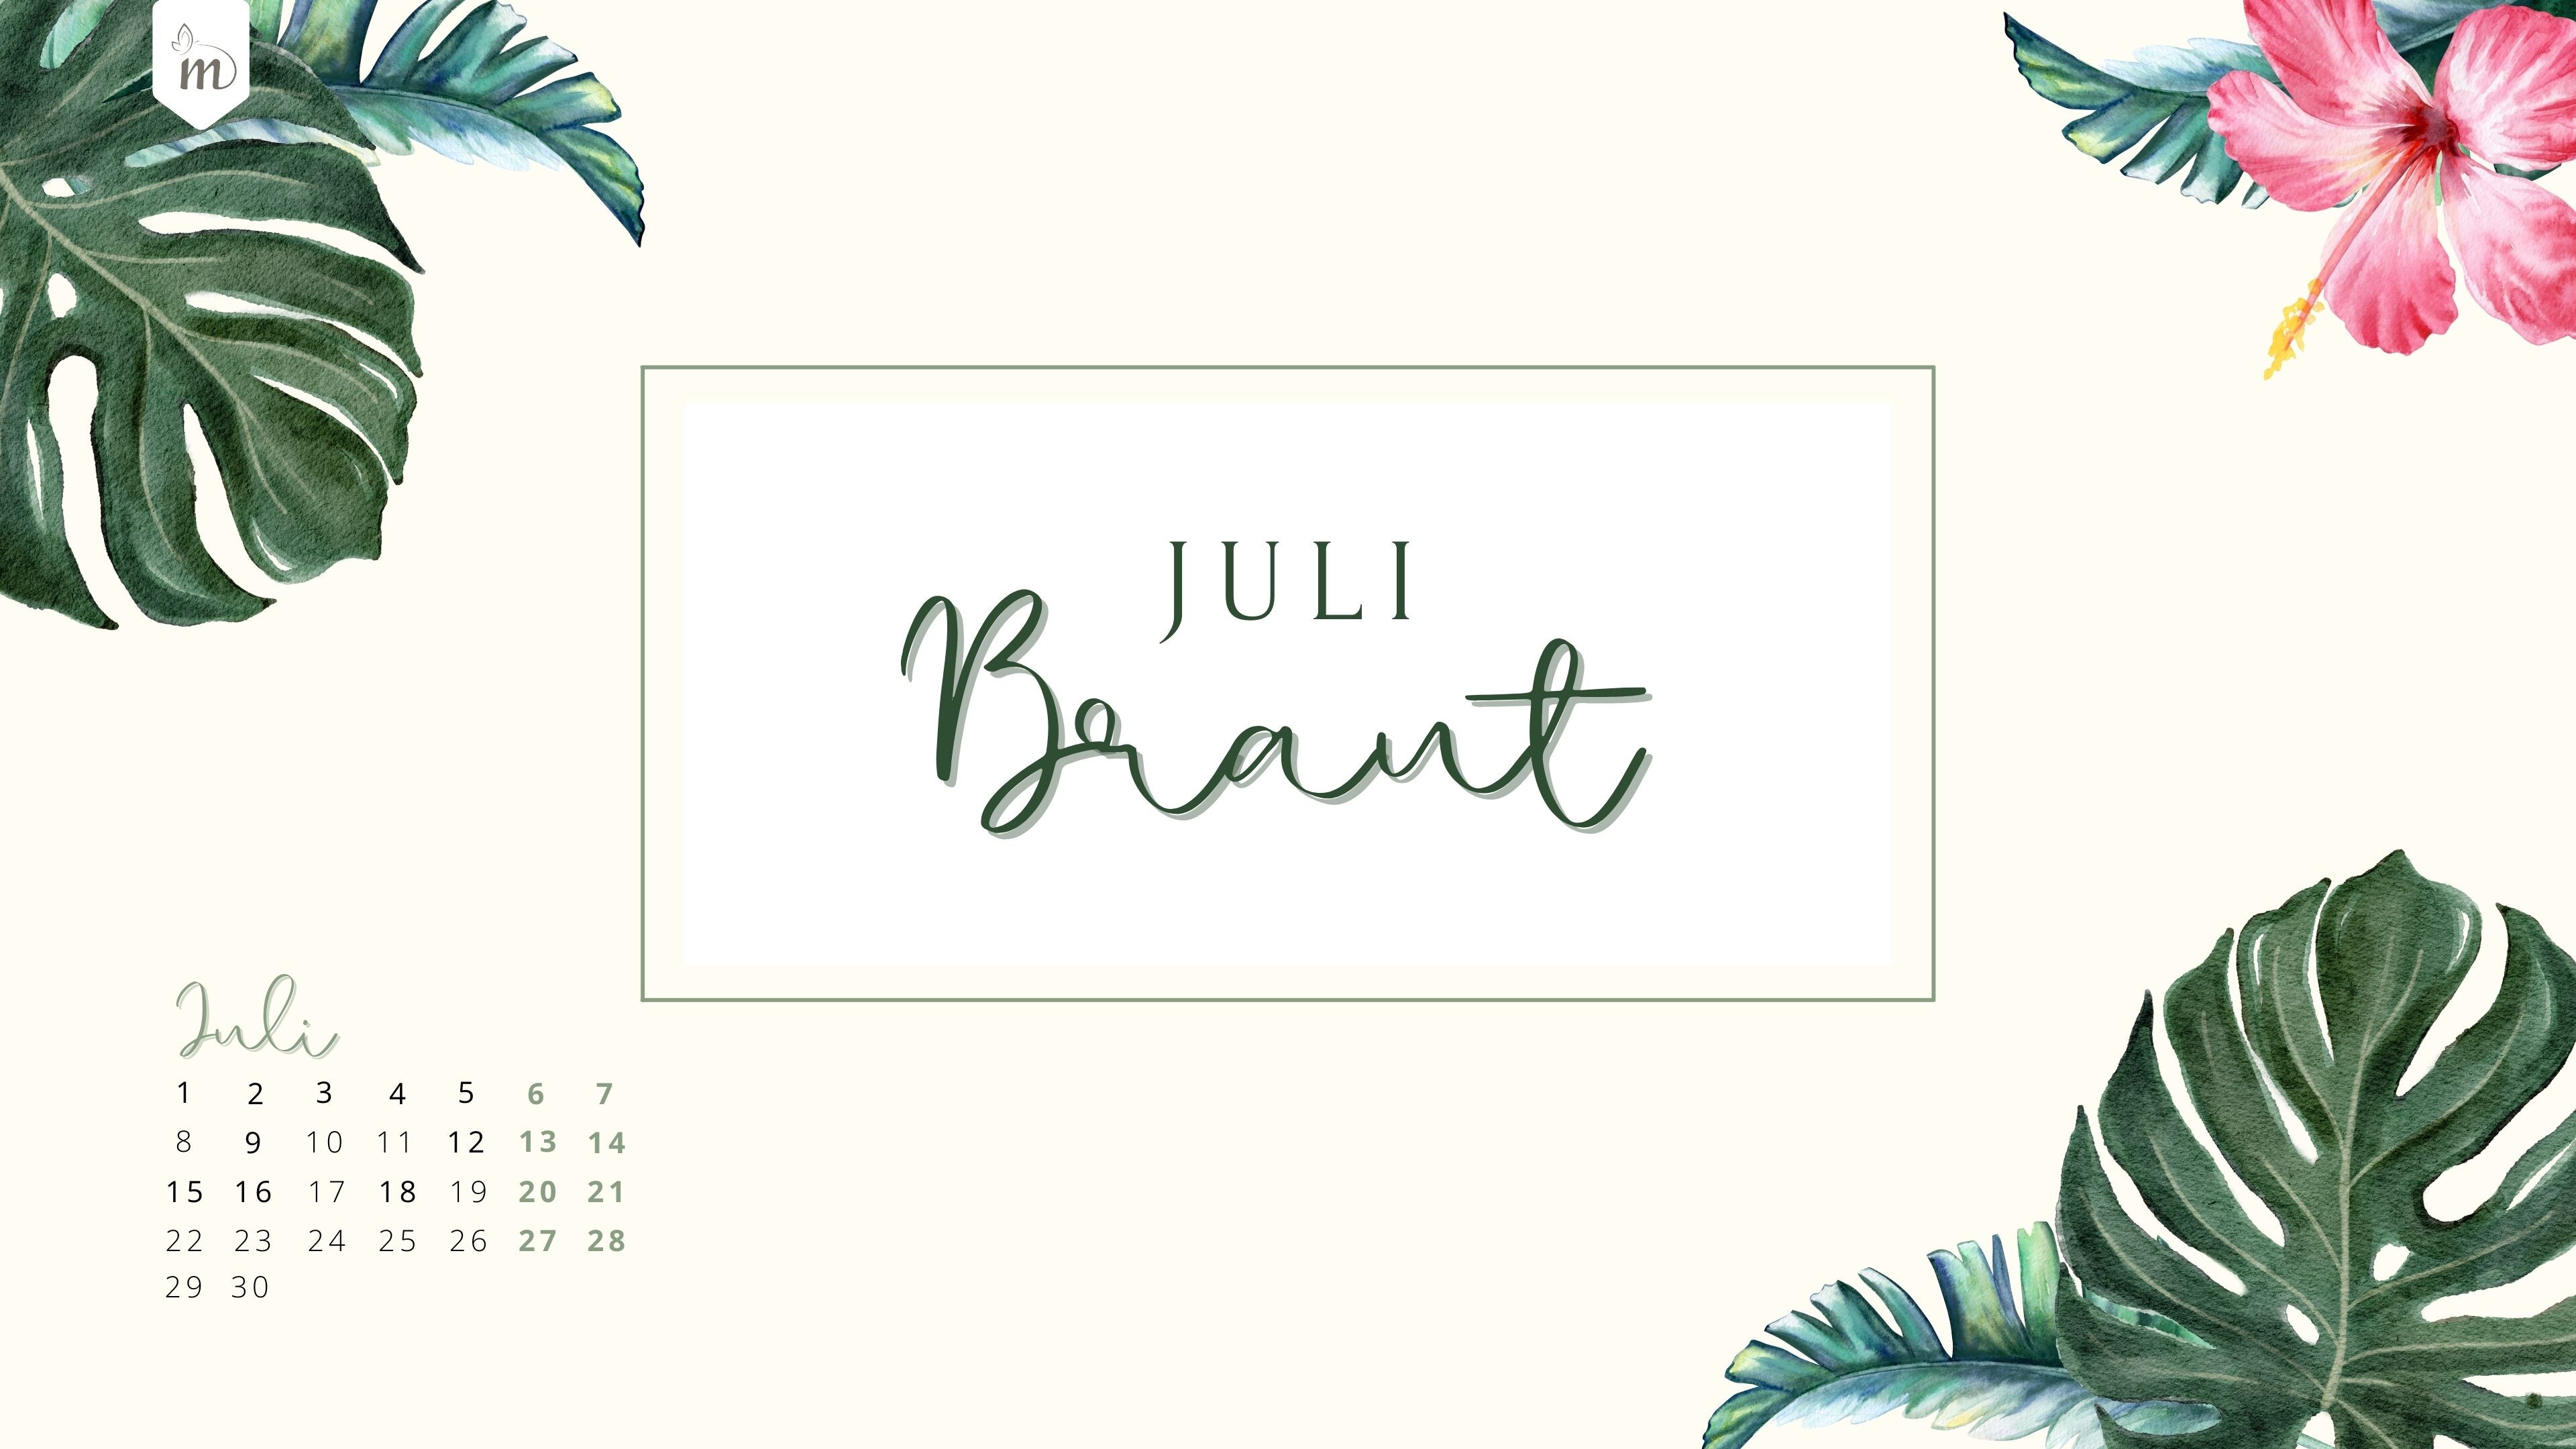 Juli Braut Wallpaper